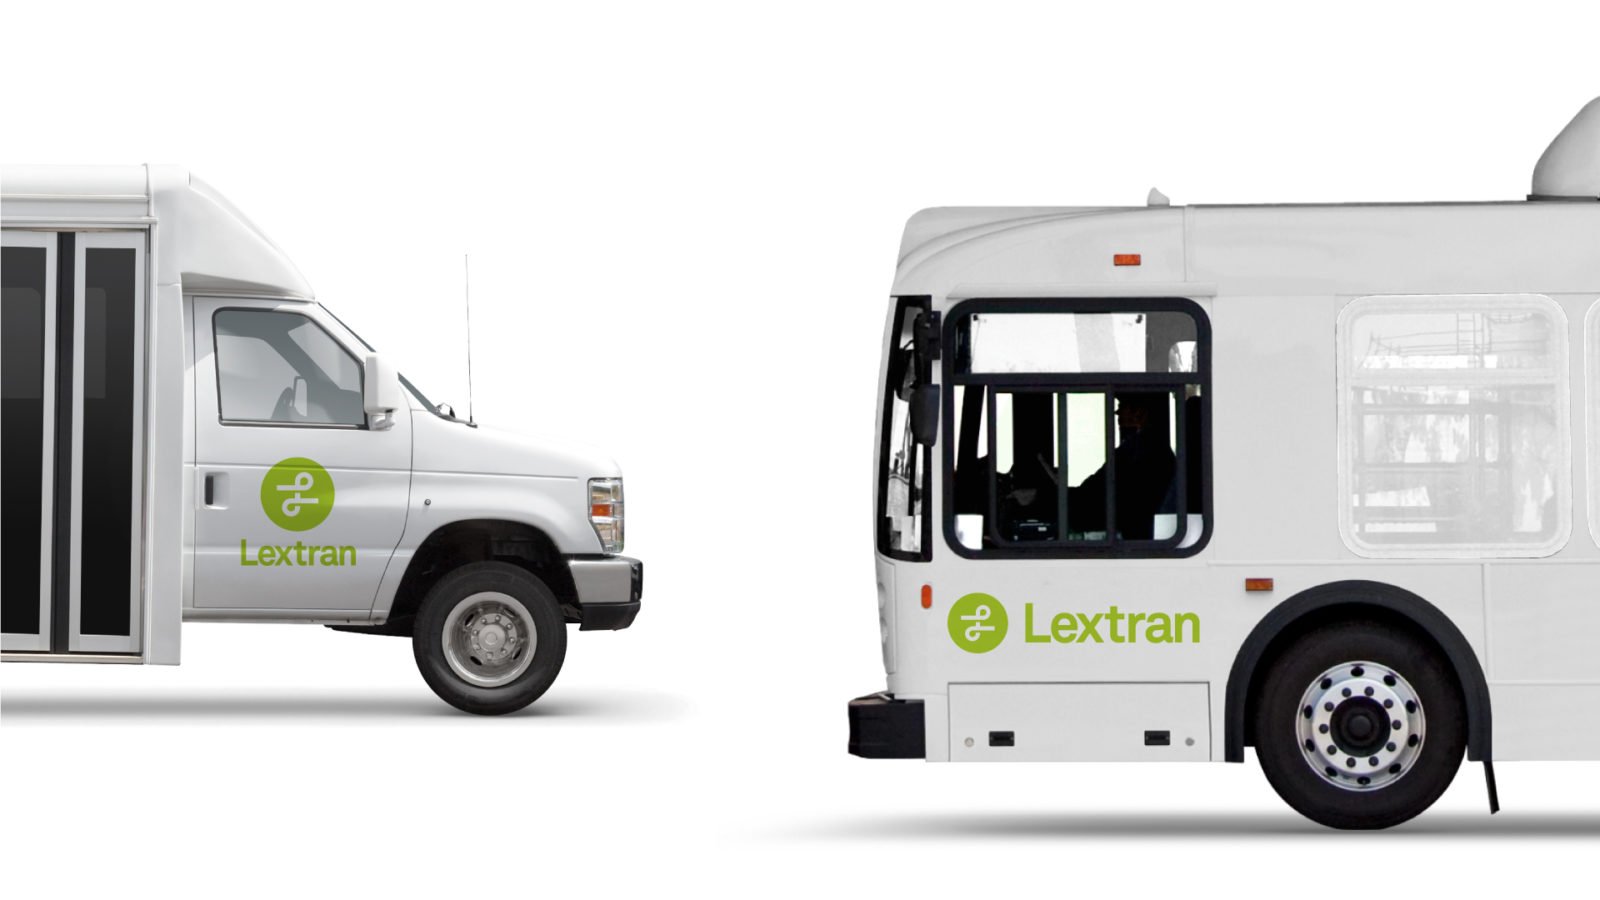 Lextran Bxrand Identity Bus Wrap